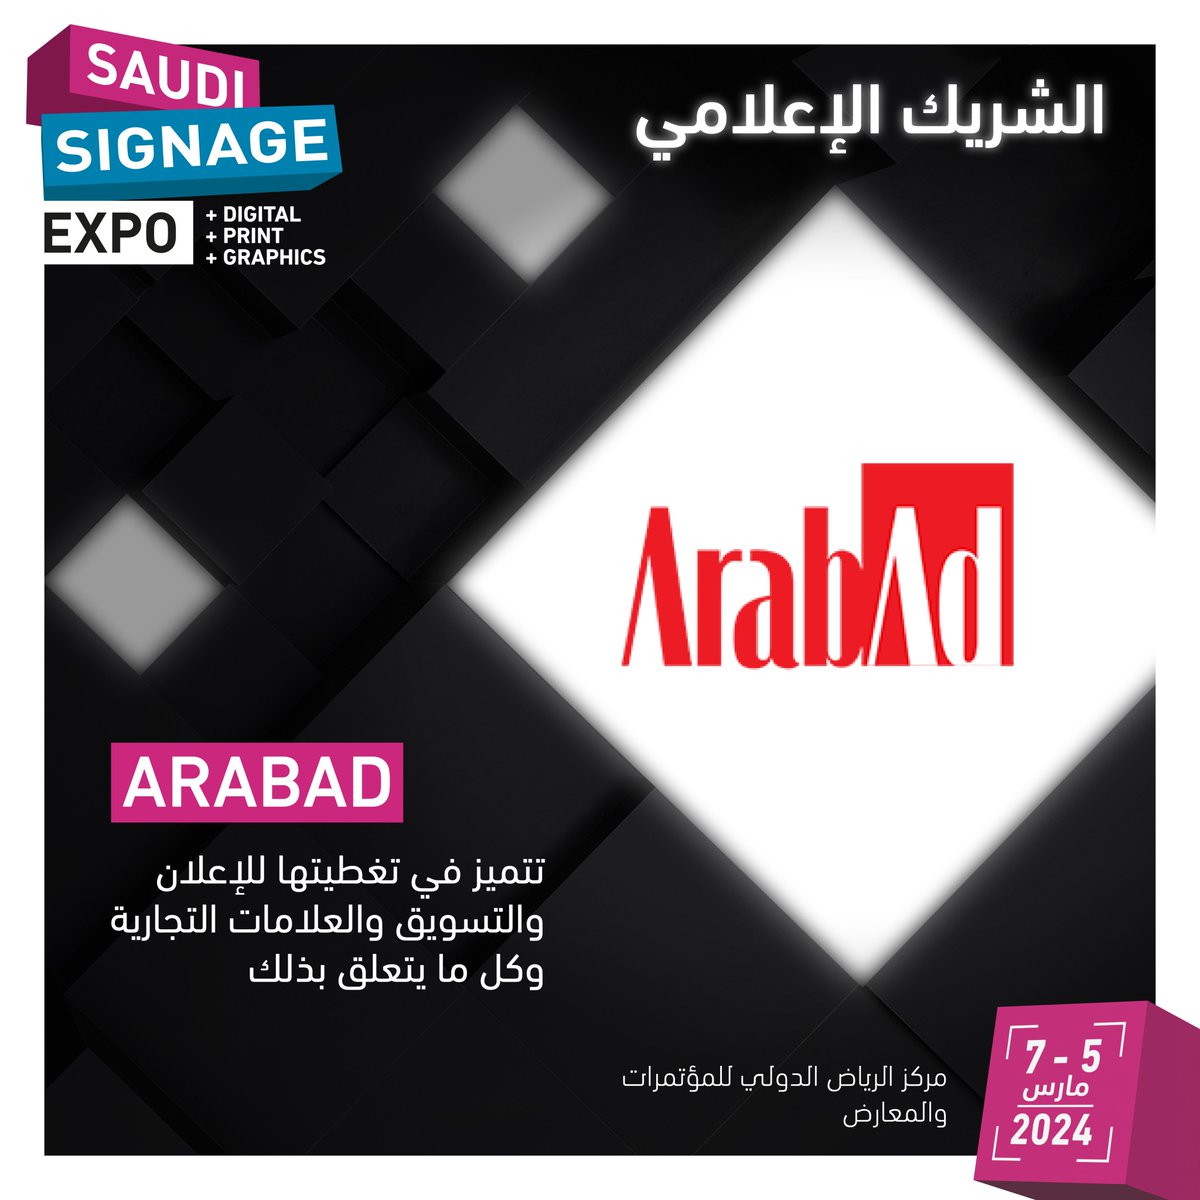 يسعدنا الإعلان عن شريكنا الإعلامي ArabAd، إحدى أولى مجلات الإعلان والتواصل وأقدمها في منطقة الشرق الأوسط وشمال إفريقيا بخبرة تتجاوز الثلاثين عامًا في تغطية كل ما هو جديد ومثير للاهتمام في المجال.

سجّل اليوم للدخول مجاناً:
saudisignageexpo.com/sm-meet-arabad